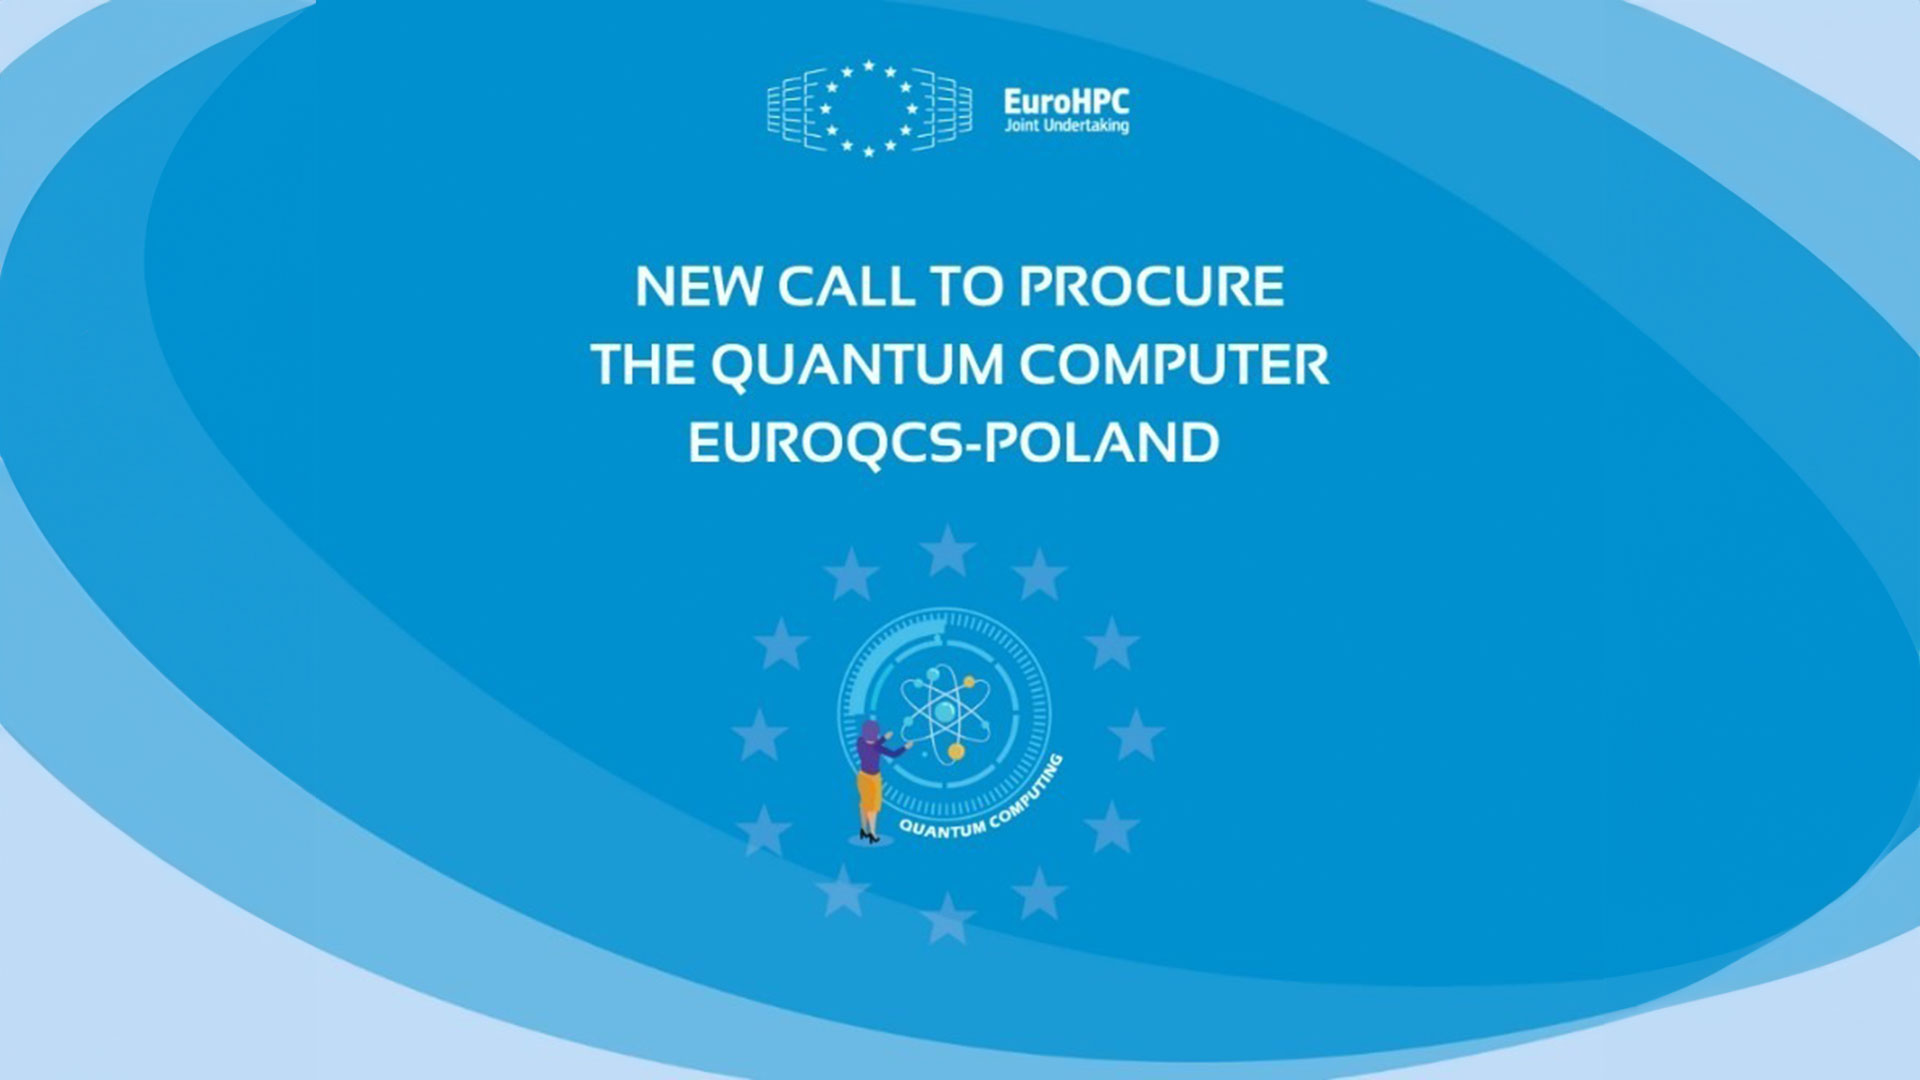 EuroHPC JU launches procurement for EuroQCS-Poland